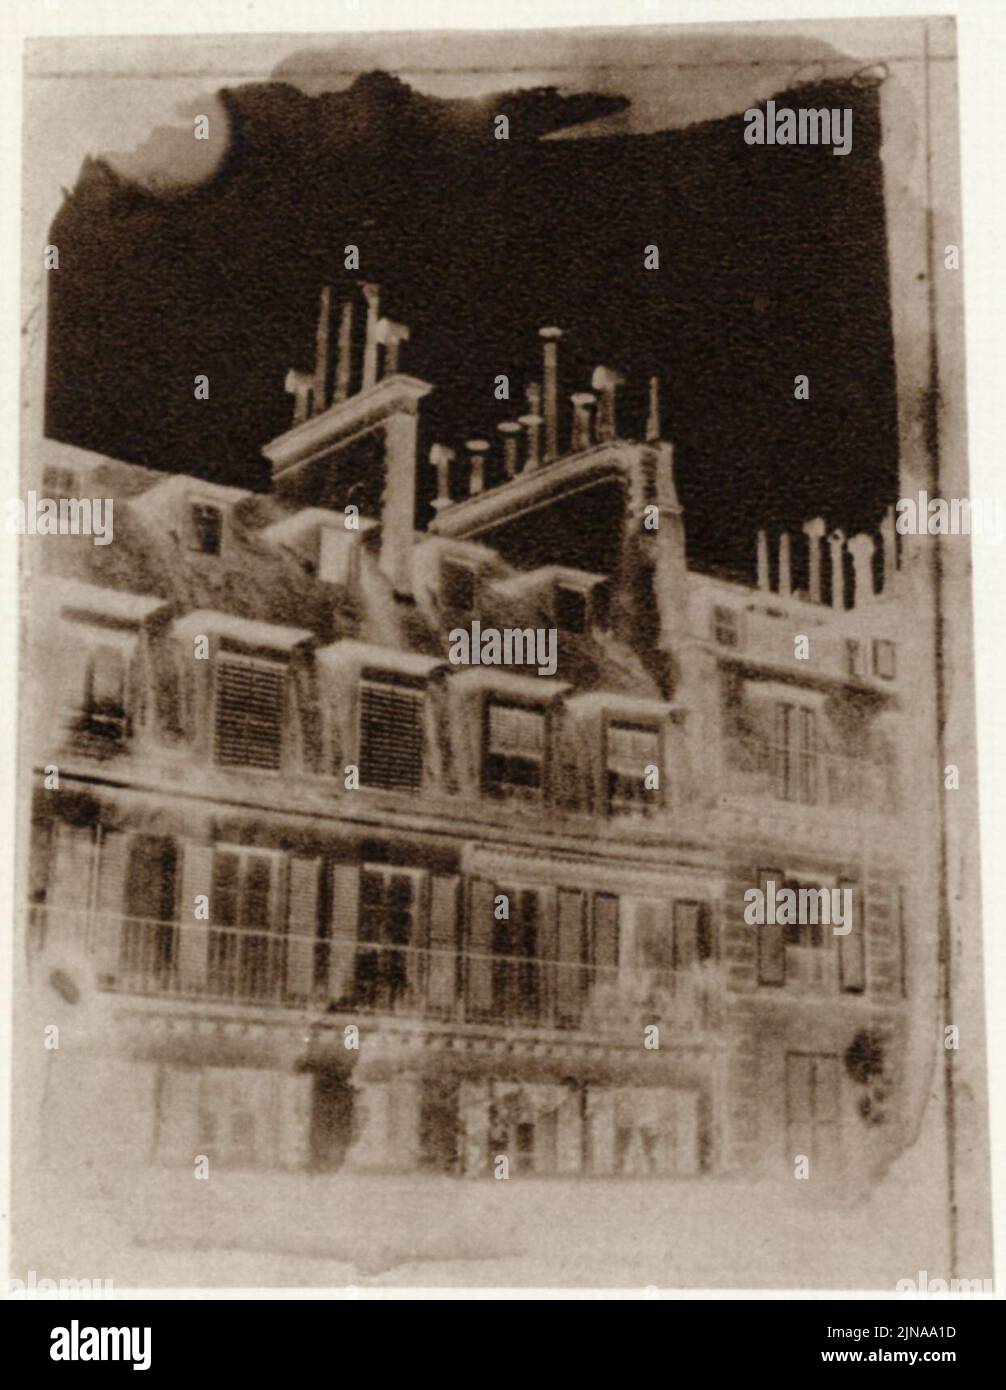 Talbot, William Henry Fox - Blick aus dem Fenster von Talbots Wohnung in der Rue de la Paix, Paris (1) Stock Photo